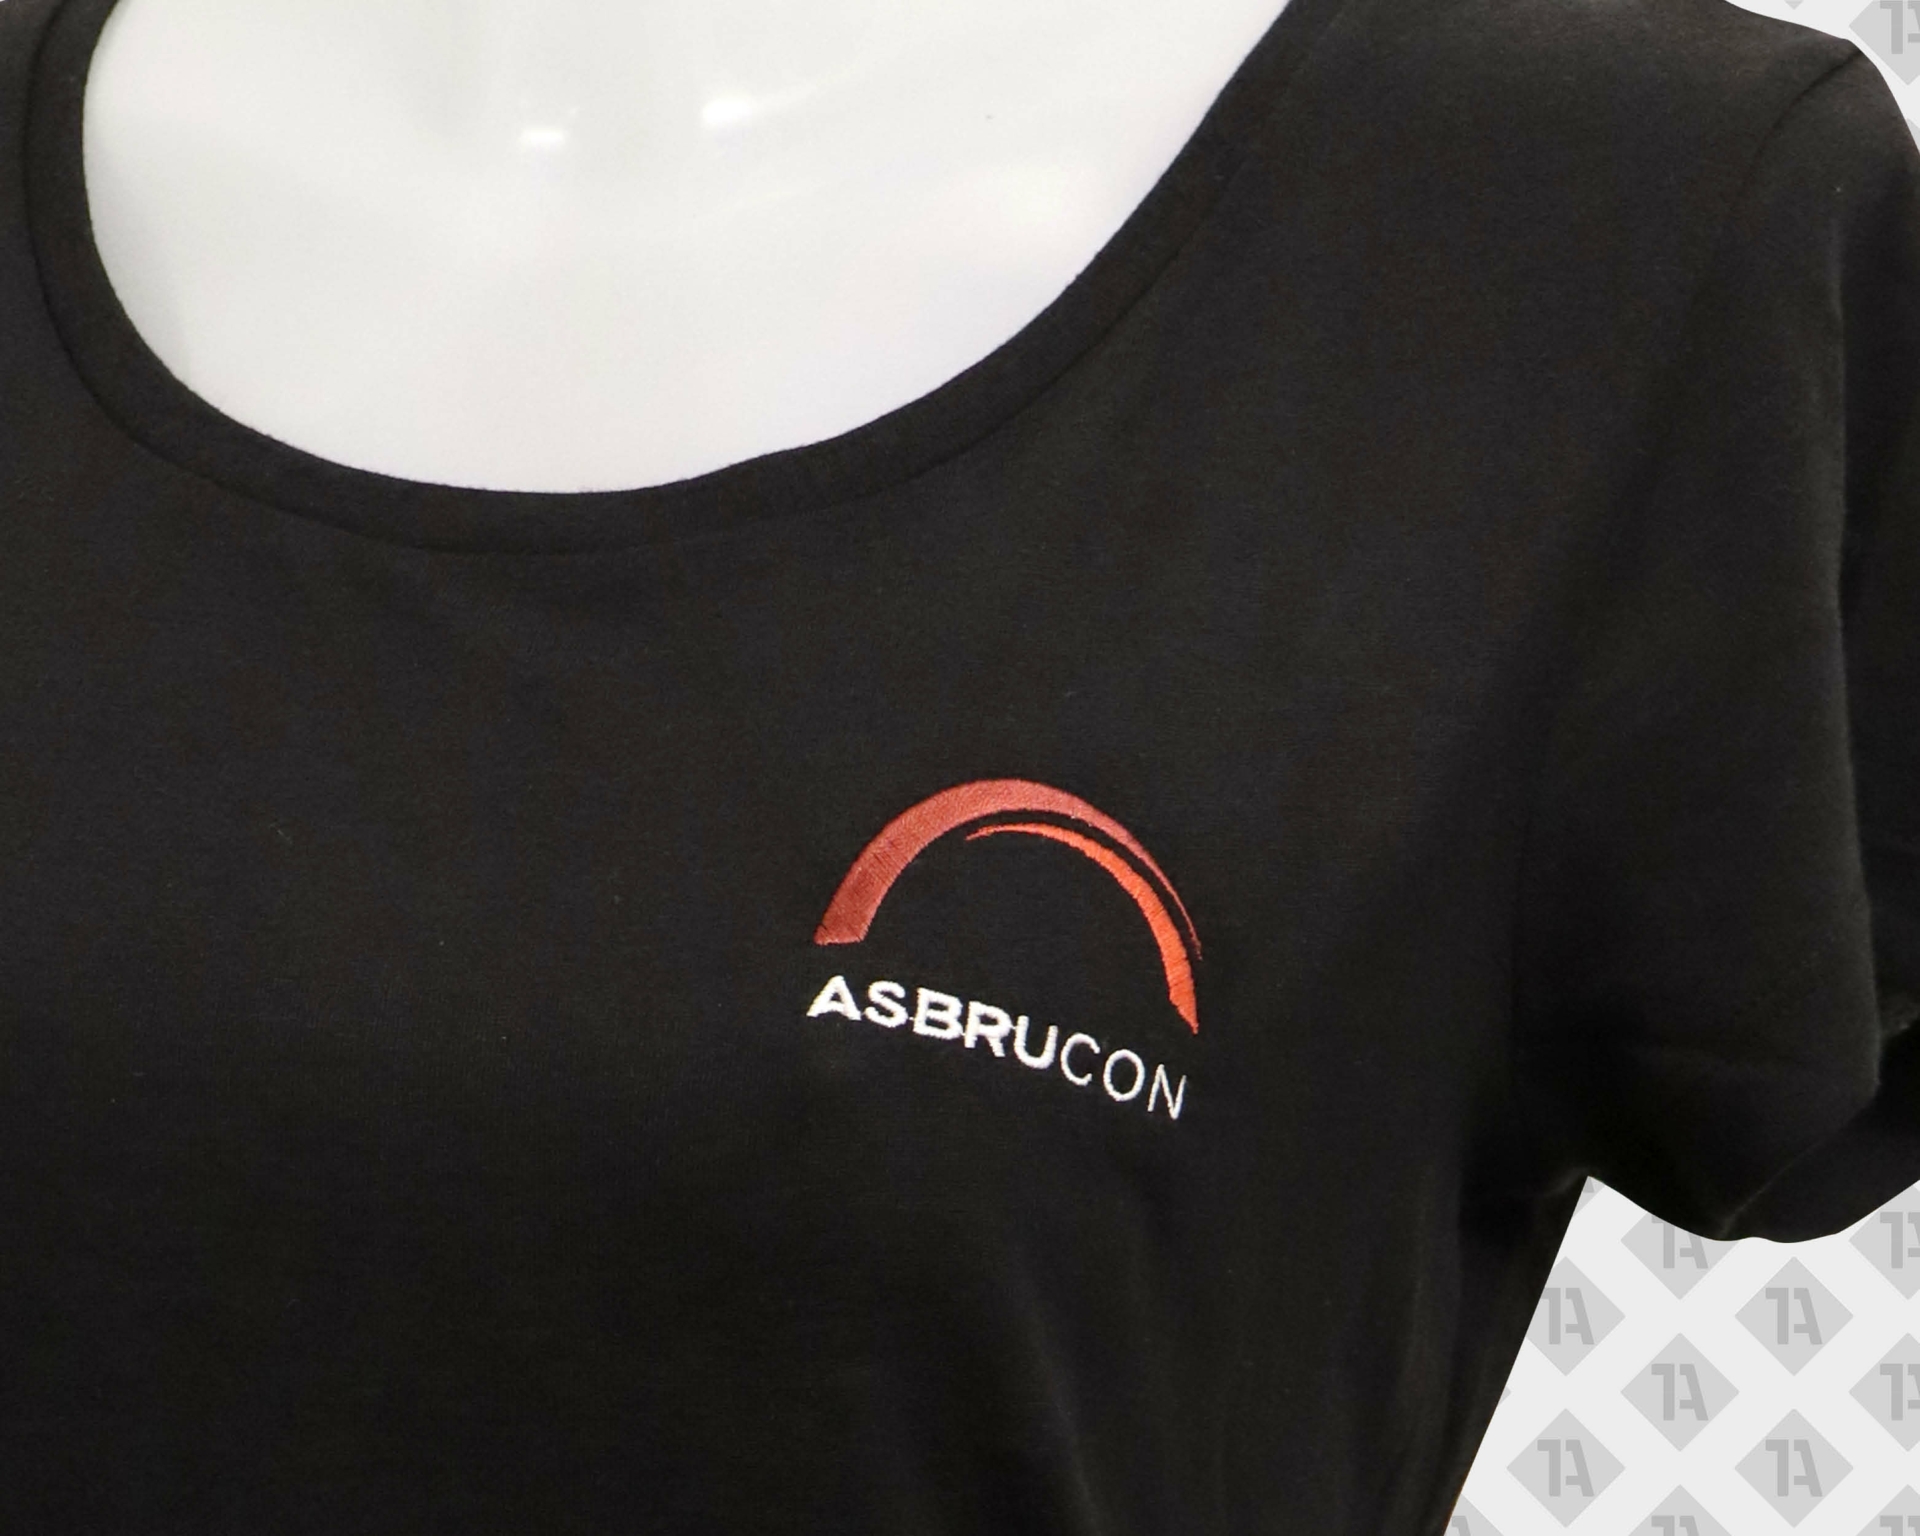 Direktstick Hoody Brust von Asbrucon in weiß rot Firmen Textilveredelung Embroidery Branding